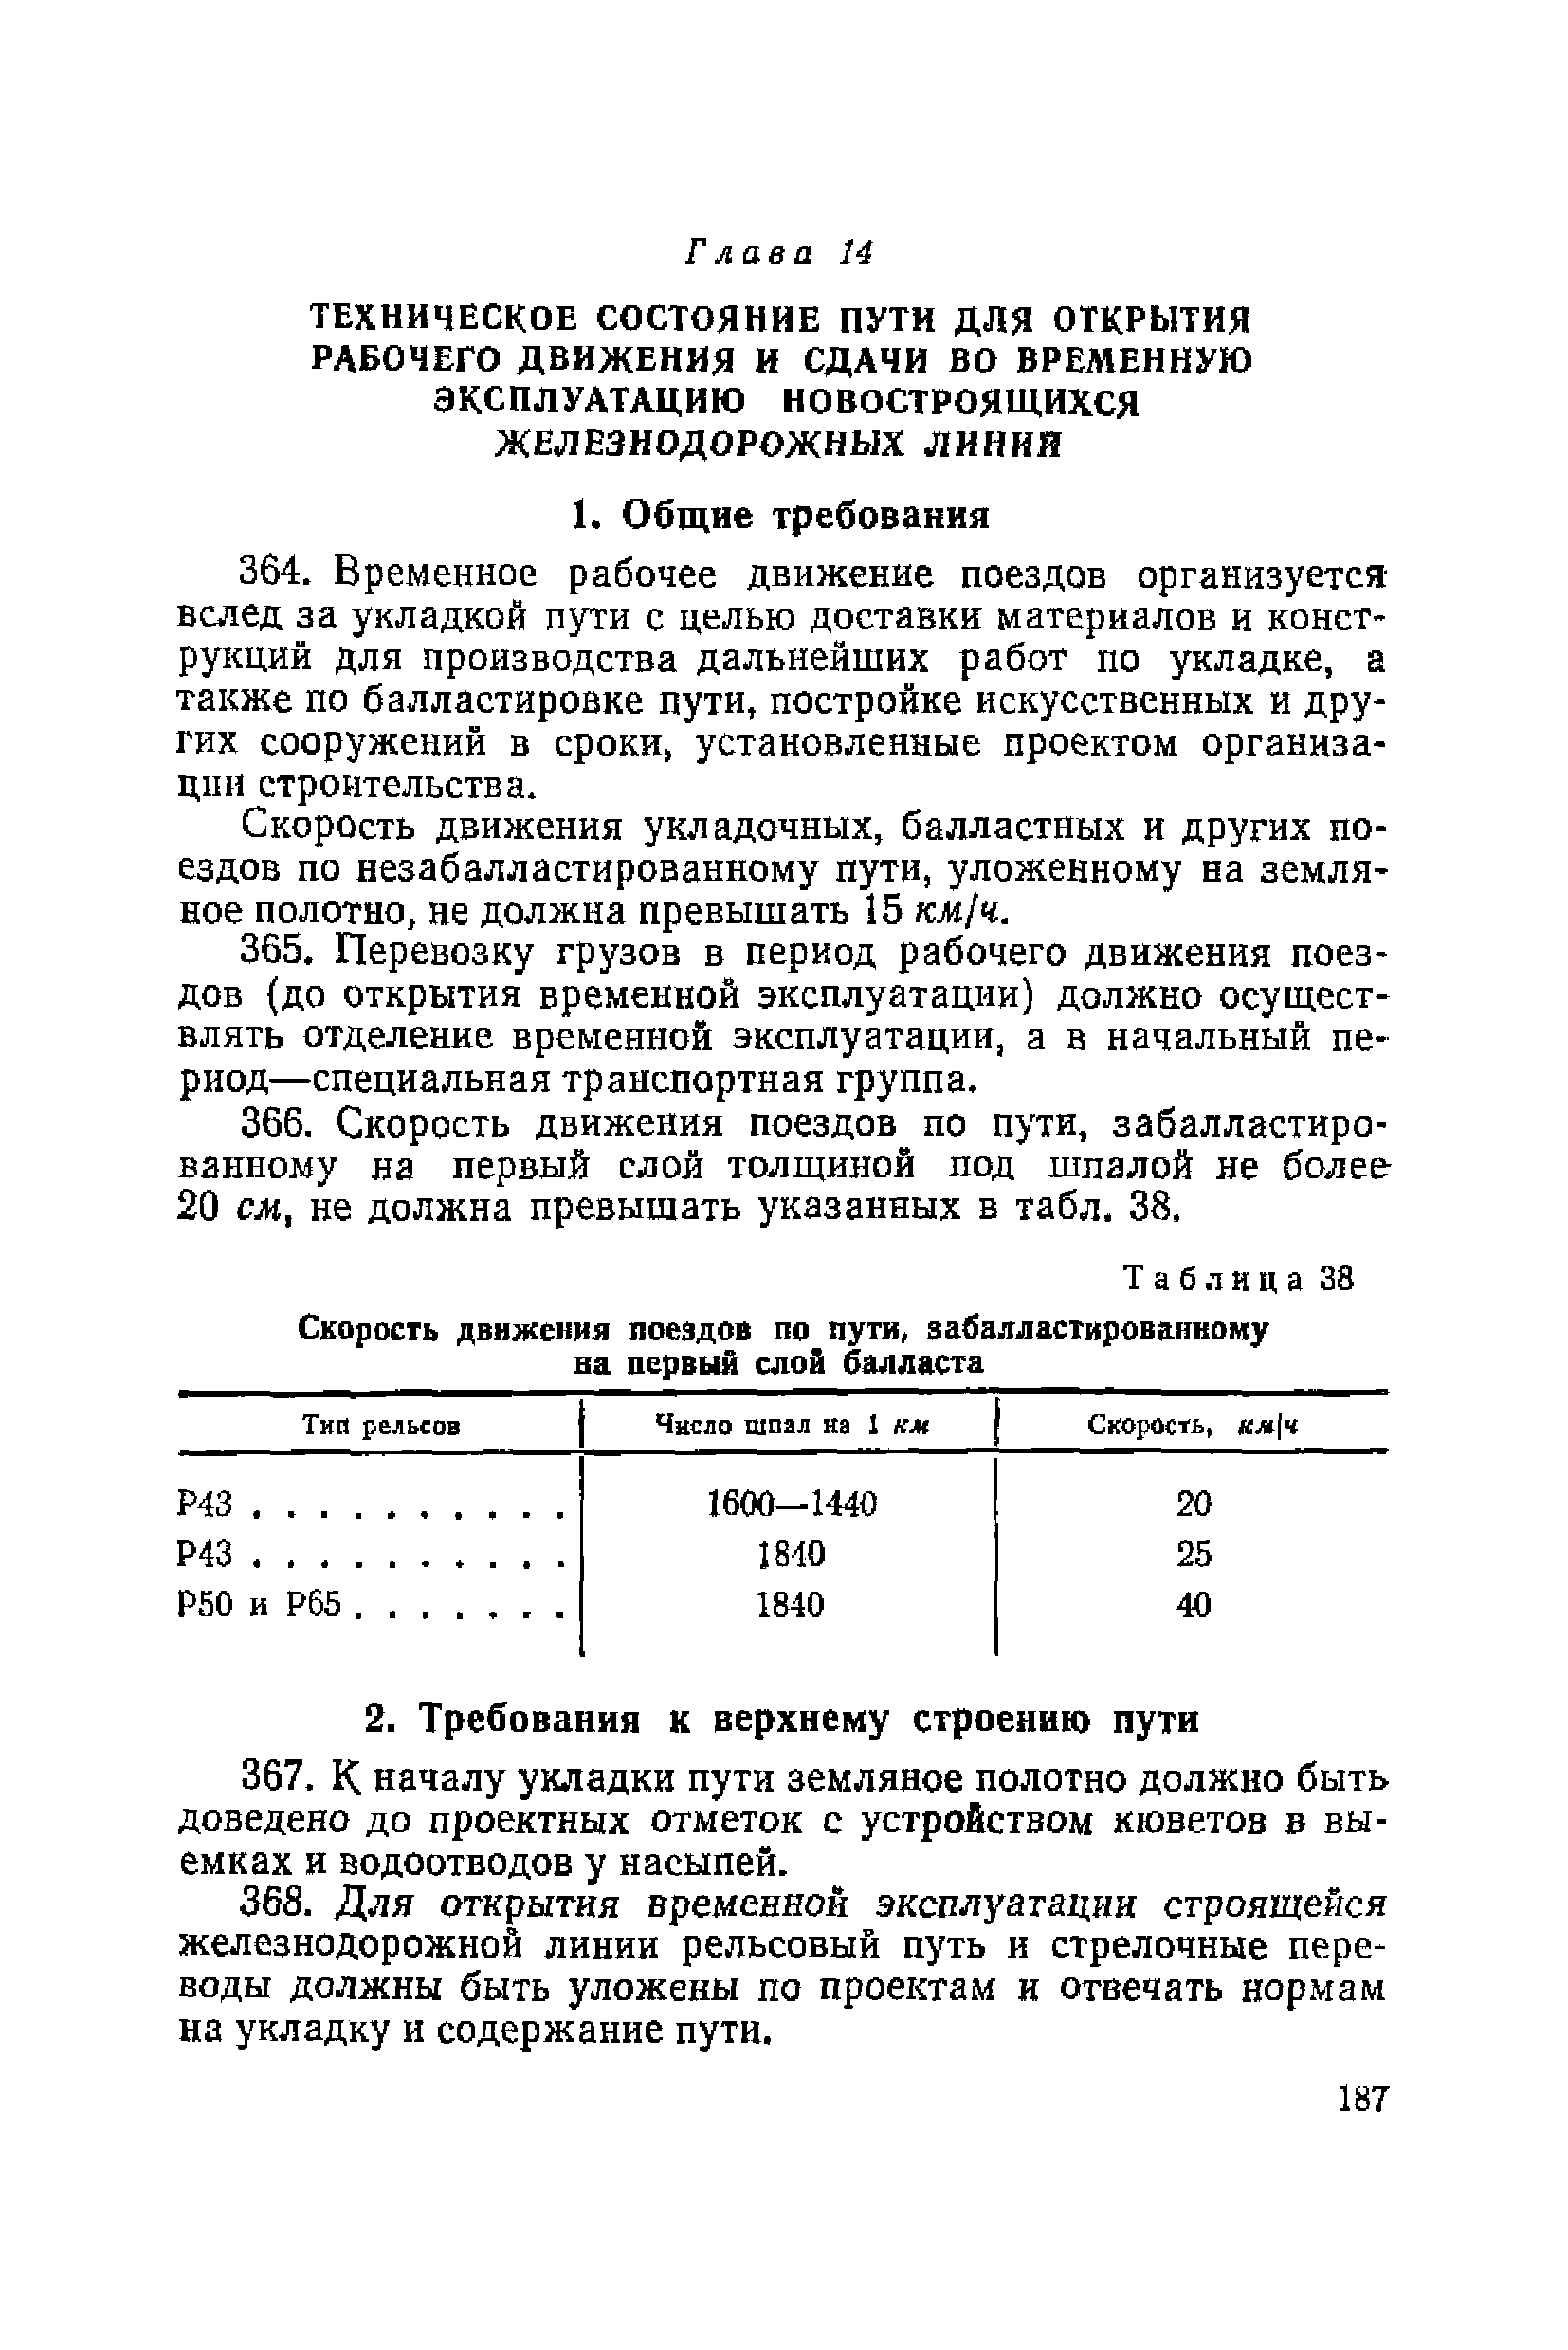 ВСН 94-63